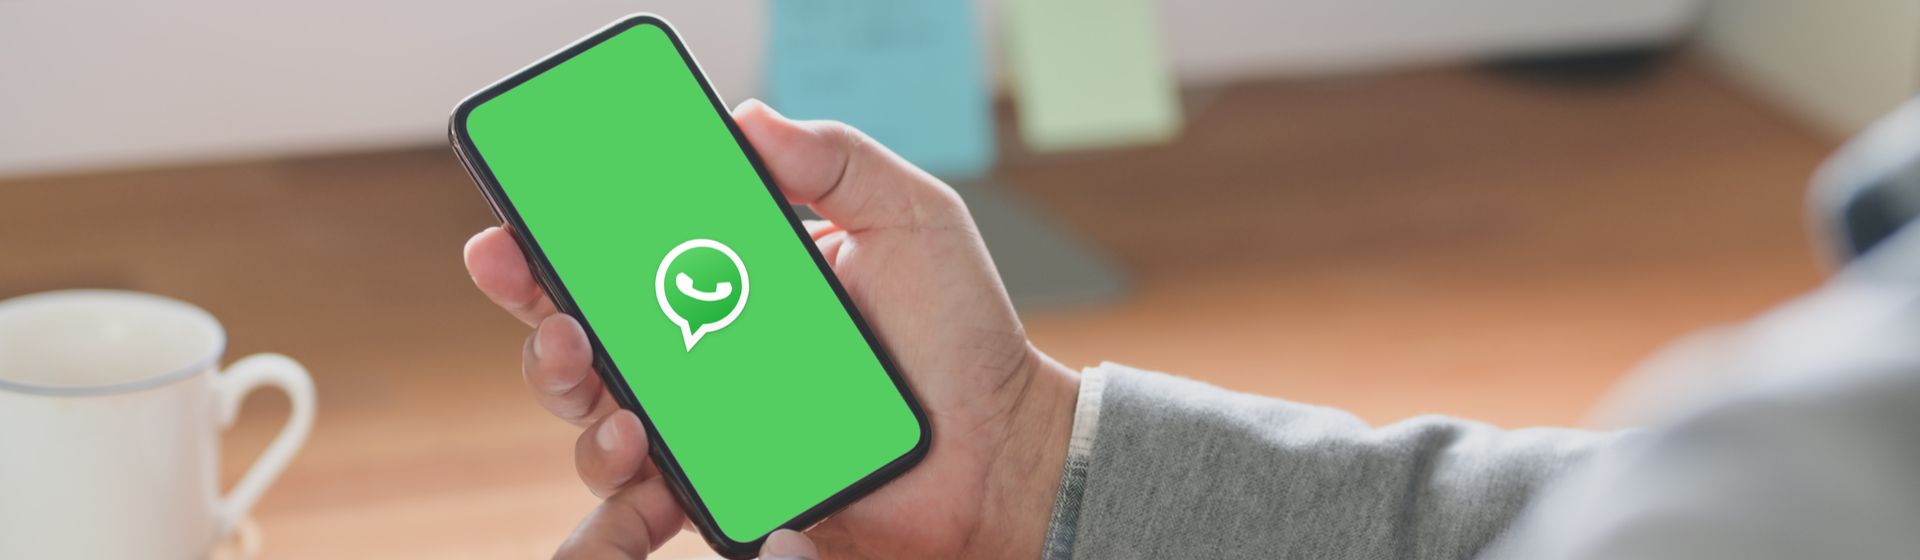 Celular barato com WhatsApp: confira boas opções